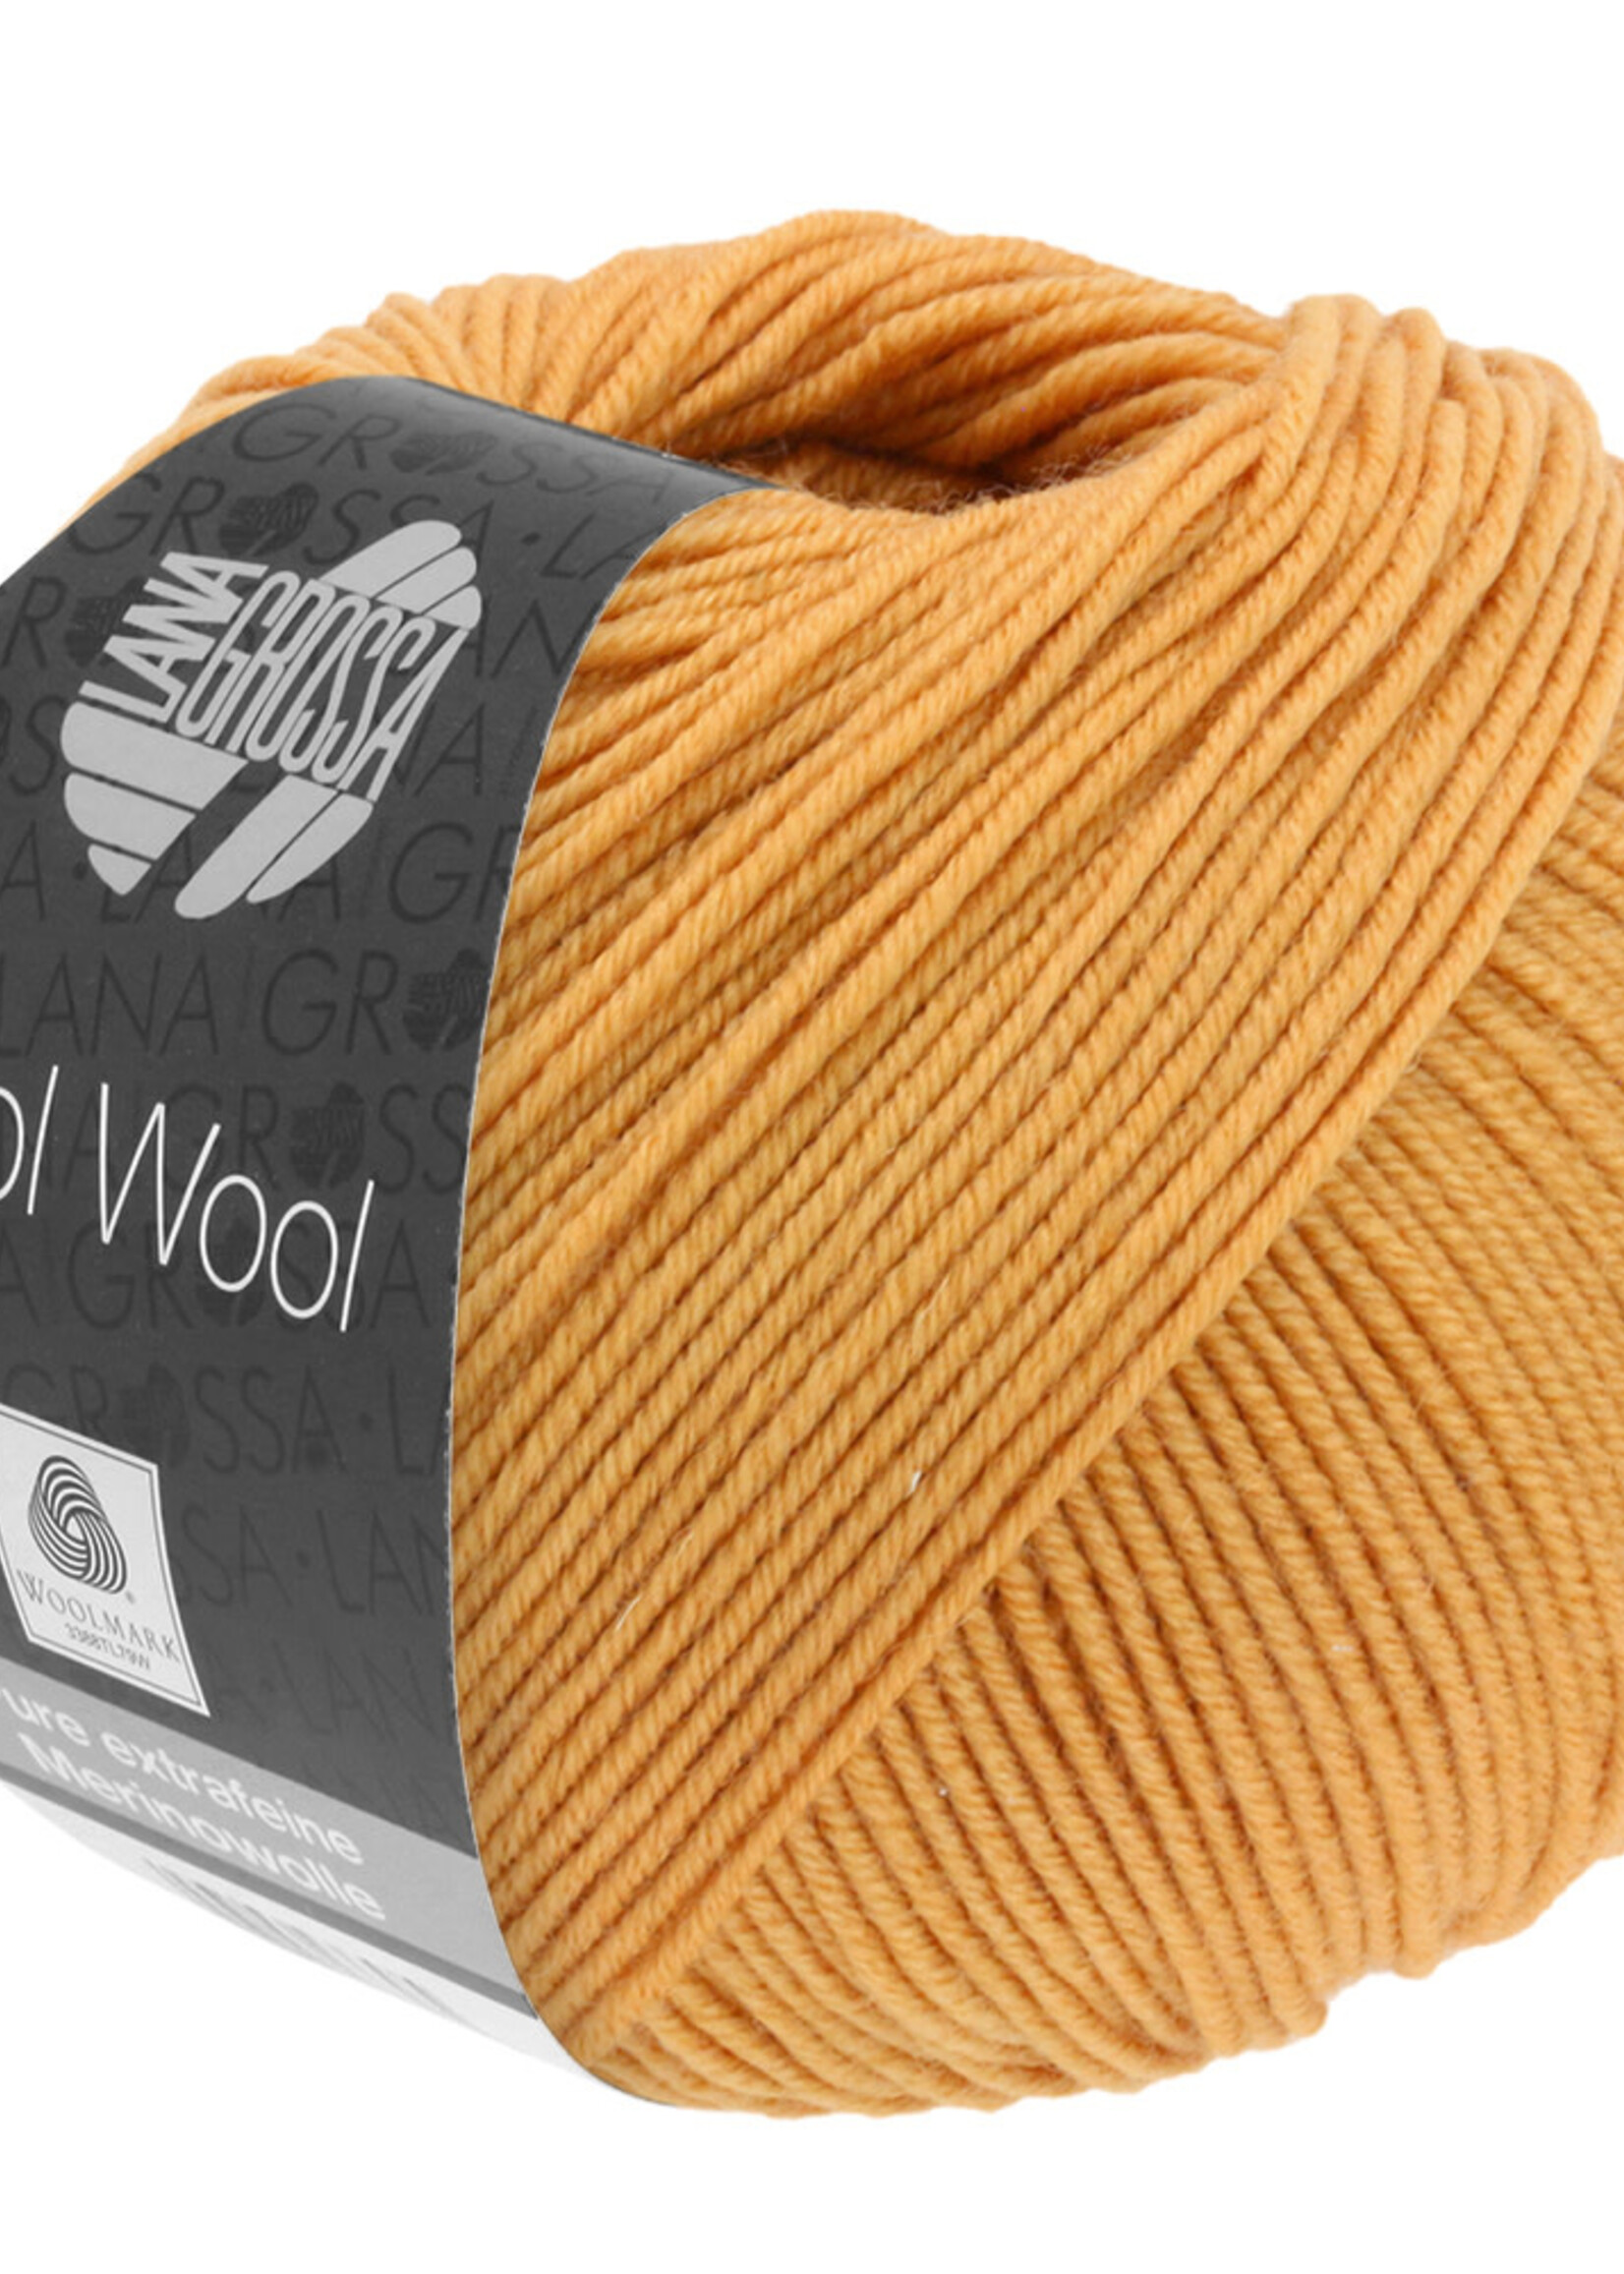 Lana Grossa Cool Wool - Lana Grossa 2083-dahliageel